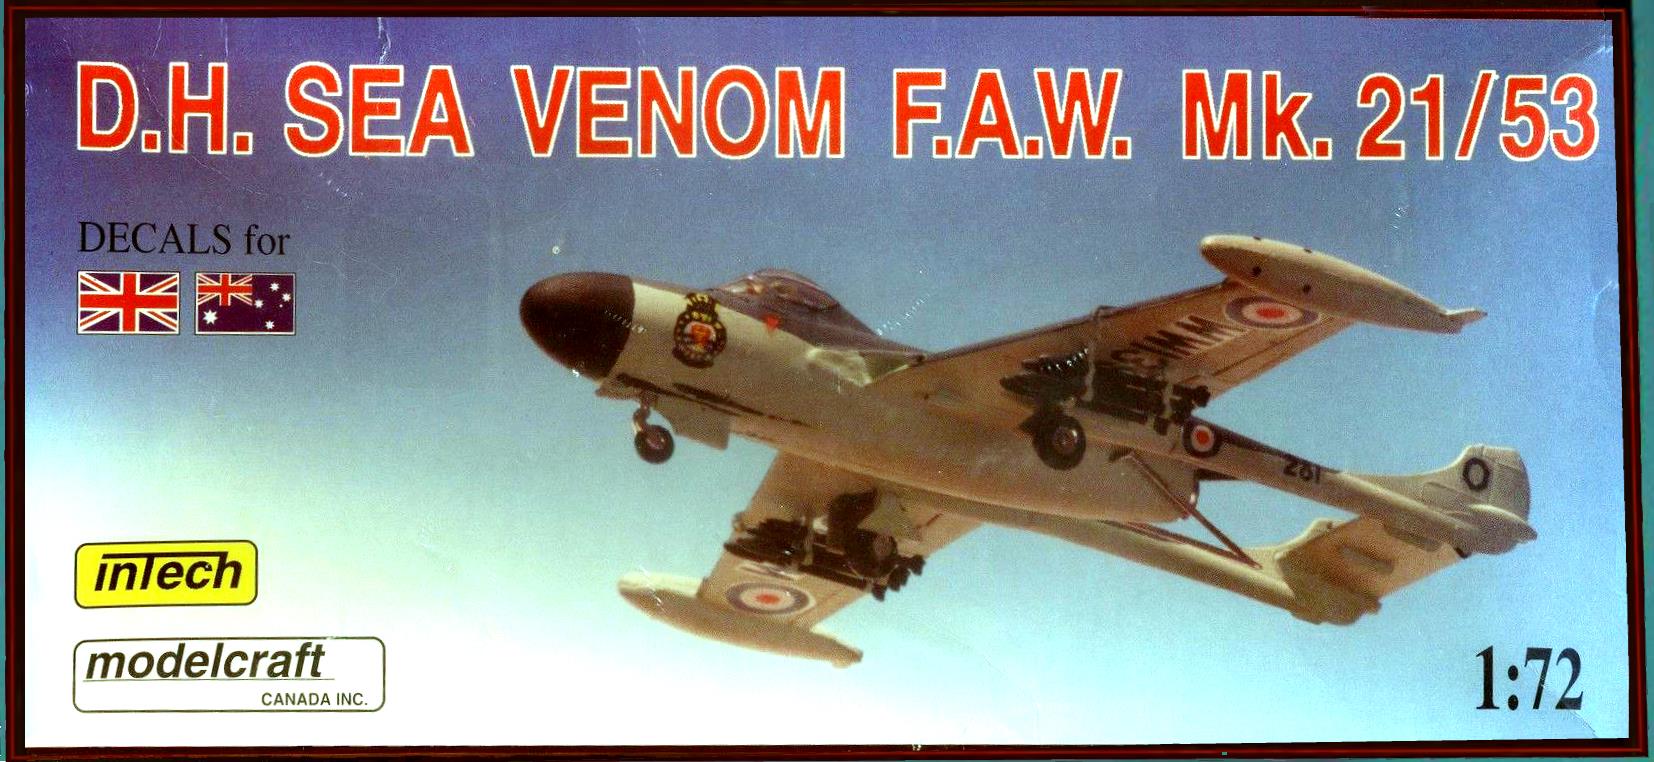 Верх коробки intech Modelcraft D.H. Sea Venom FAW Mk21/53